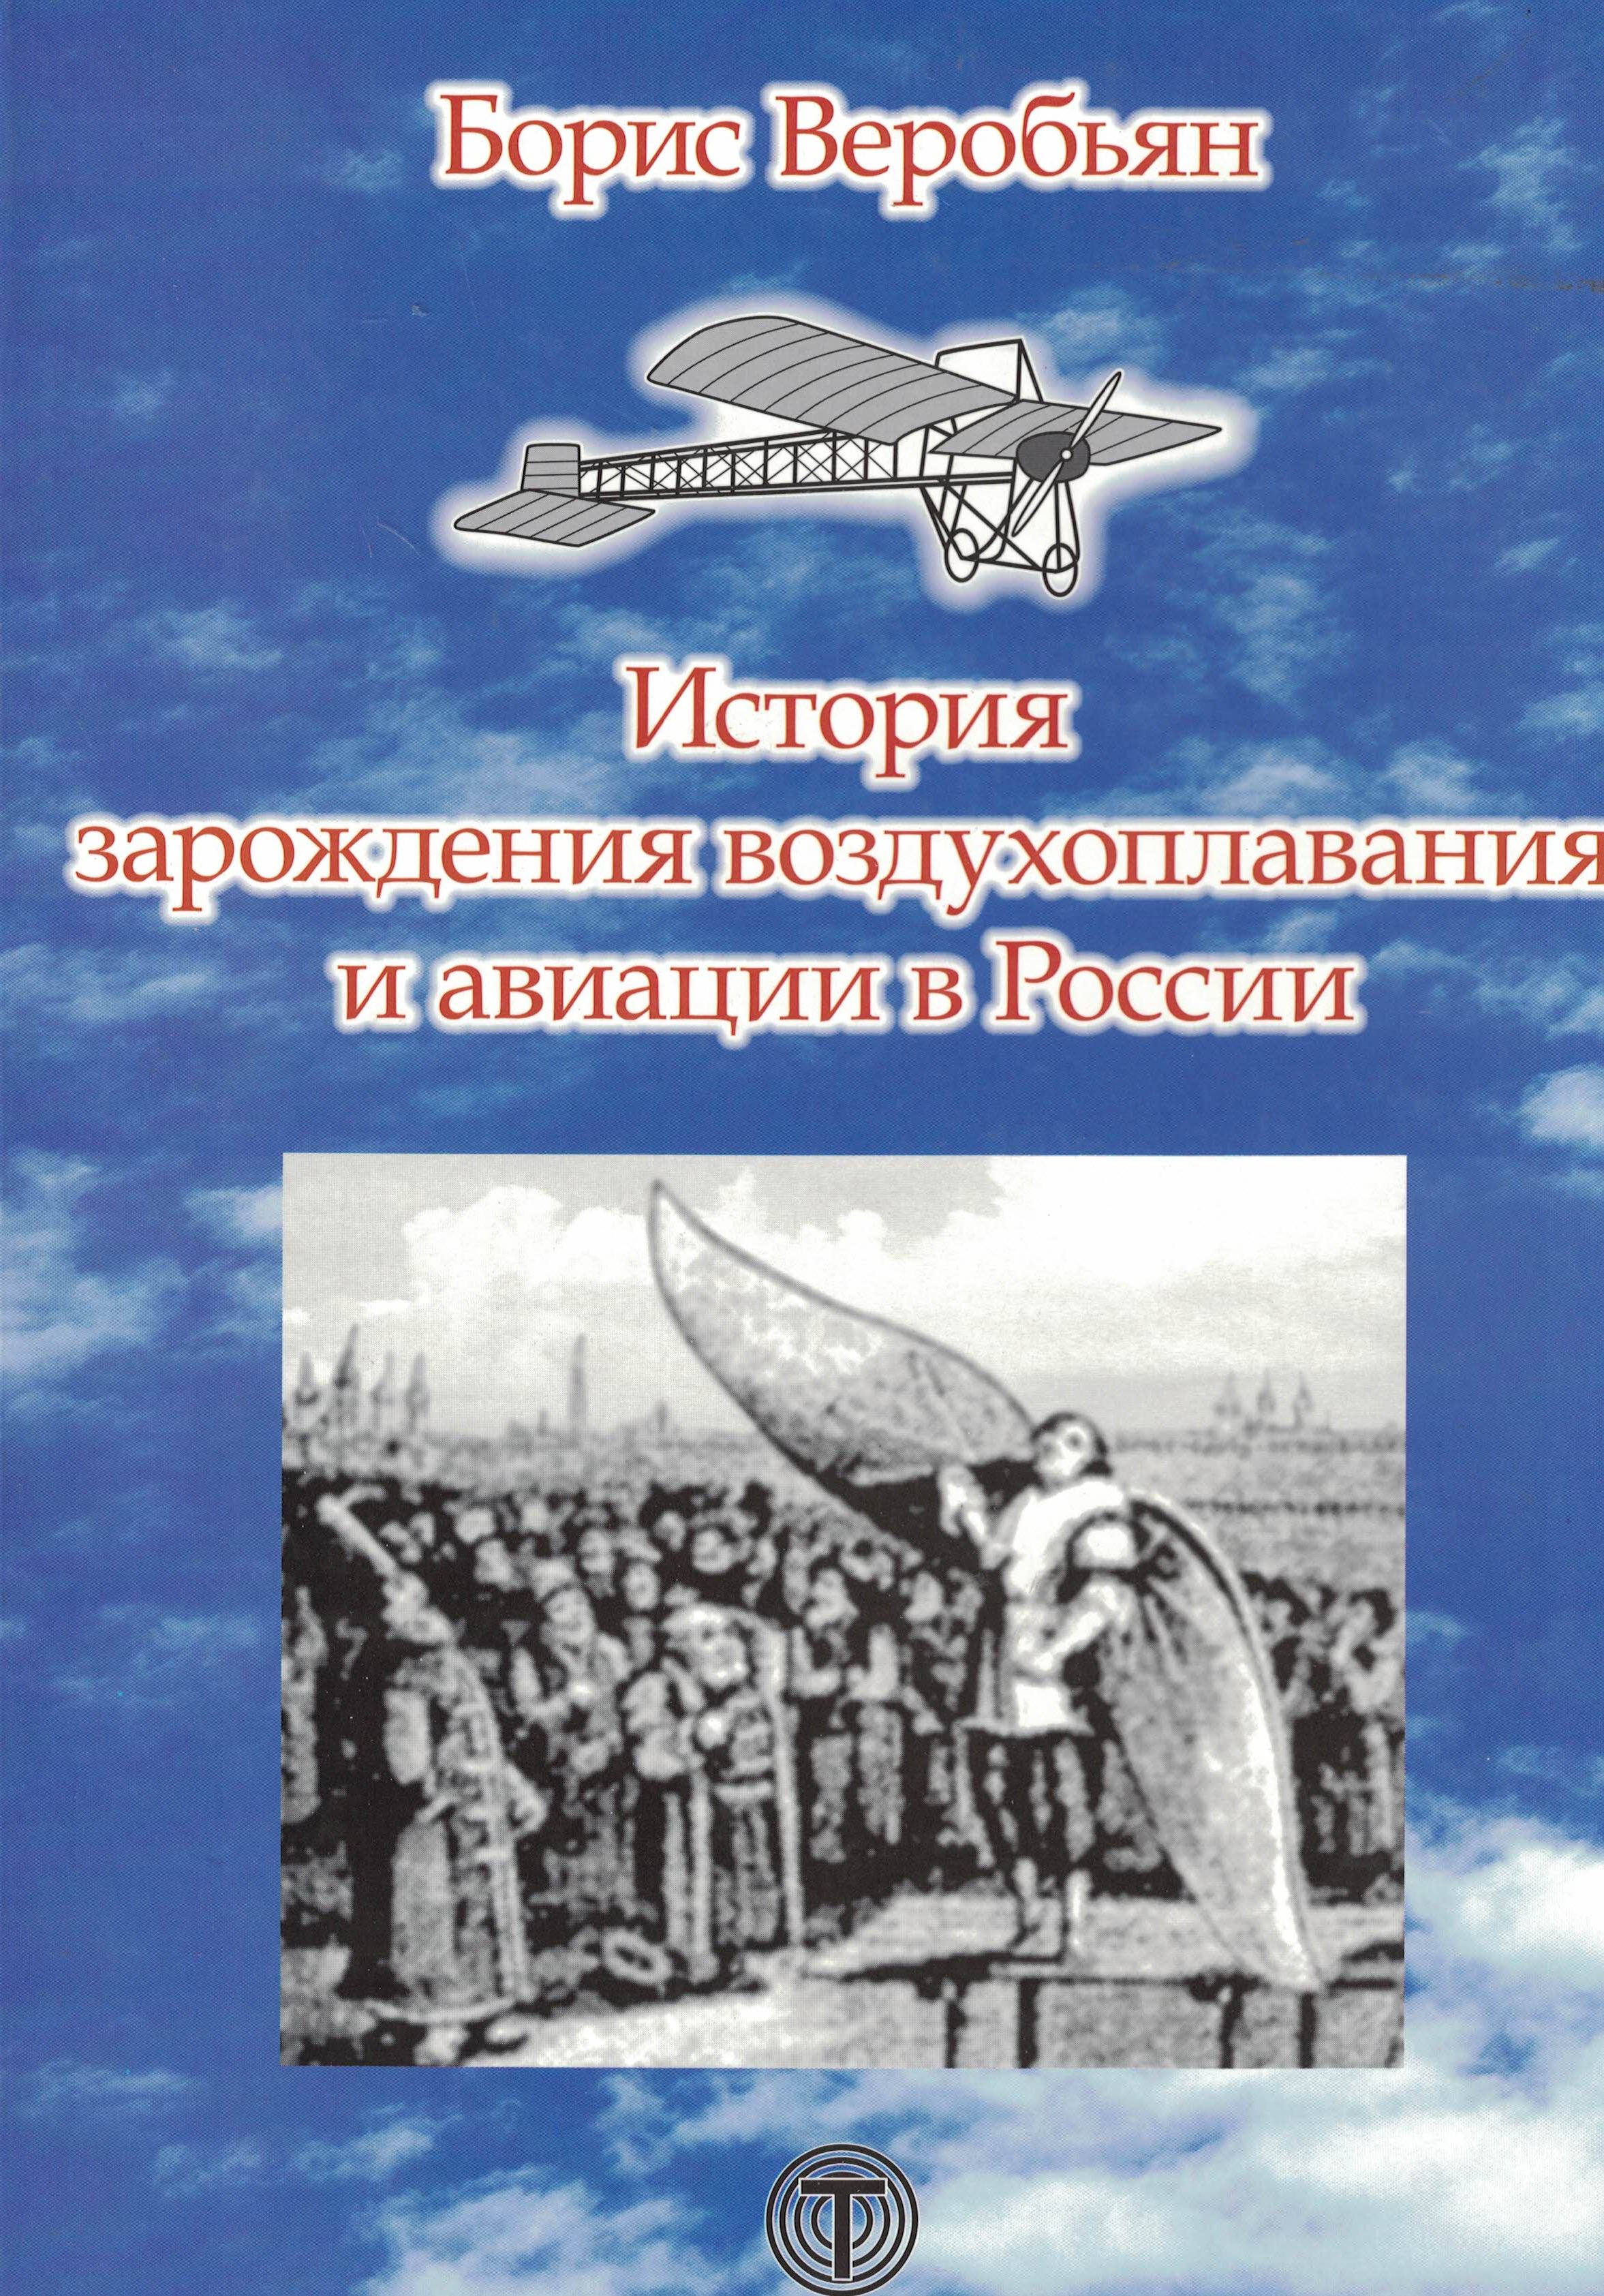 5010405  Веробьян Б.С.  История зарождения воздухоплавания и авиации в России